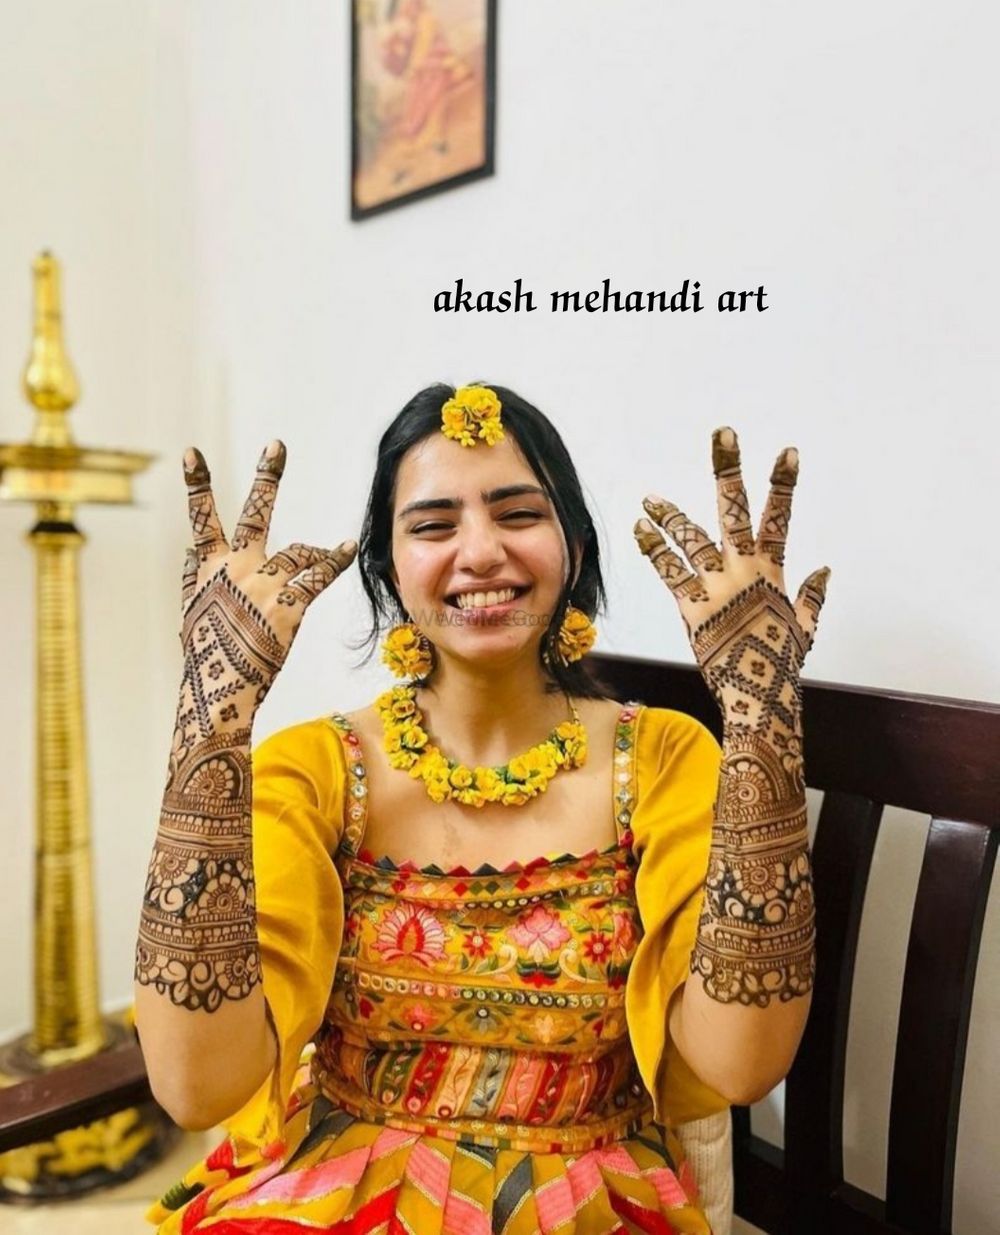 Photo From Akash Mehandi Art - By Akash Mehandi Art